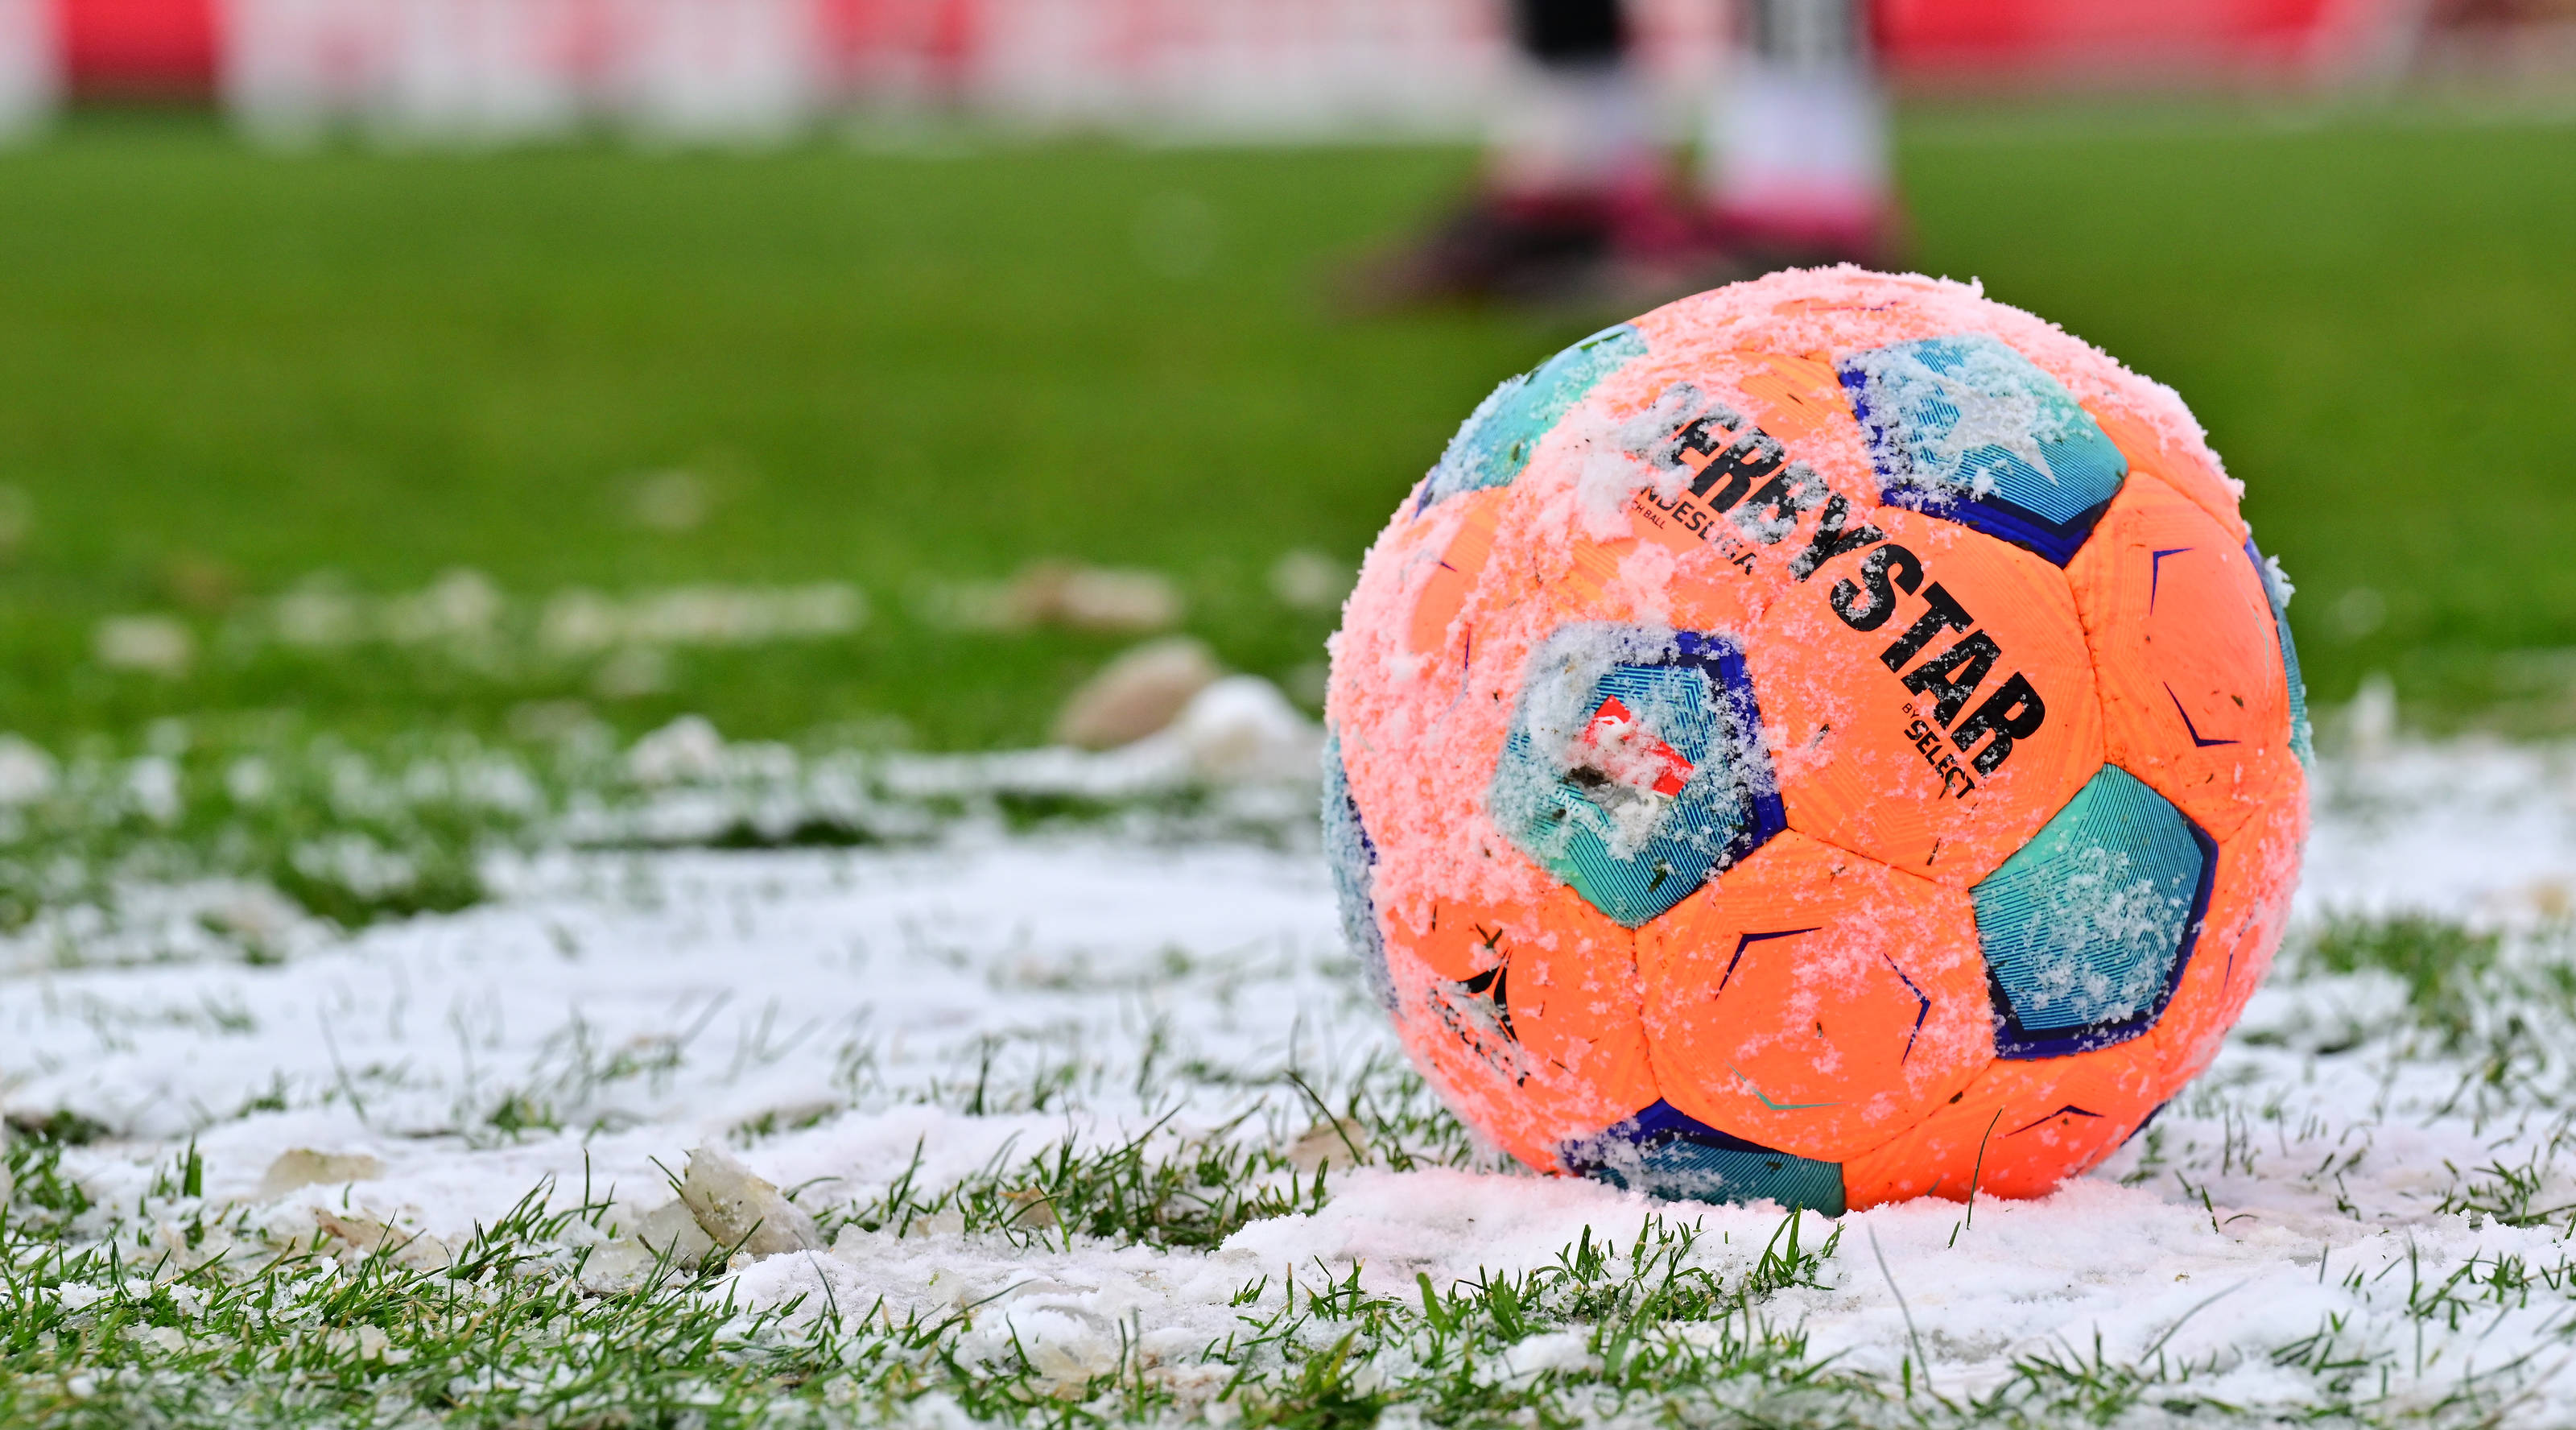 2. Bundesliga im Winter, der Winterball in orange in leichtem Schnee